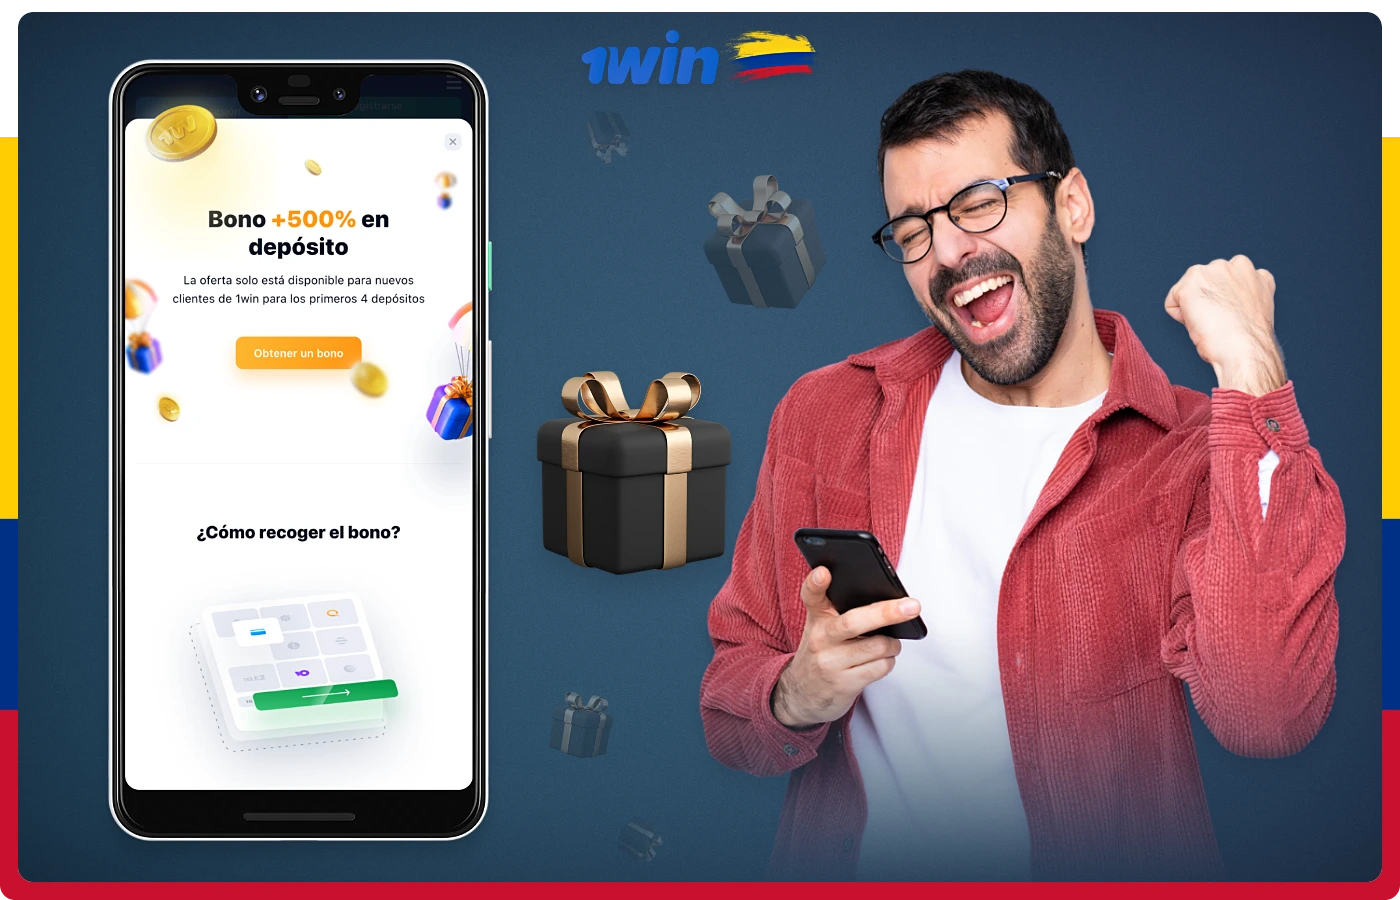 La aplicación móvil 1win ofrece generosos bonos a los usuarios colombianos